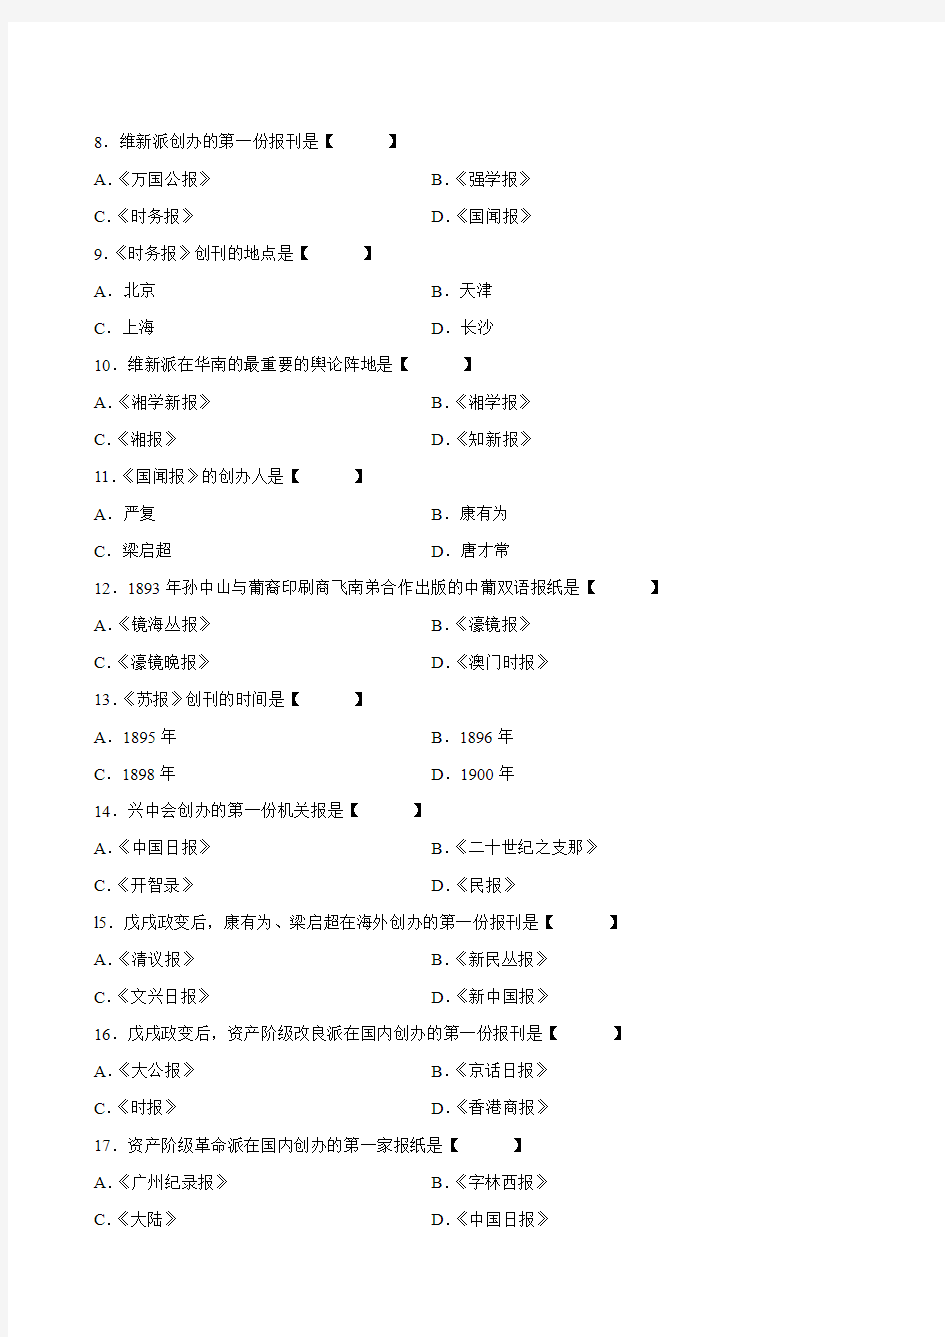 真题版2009年04月自学考试00653《中国新闻事业史》历年真题